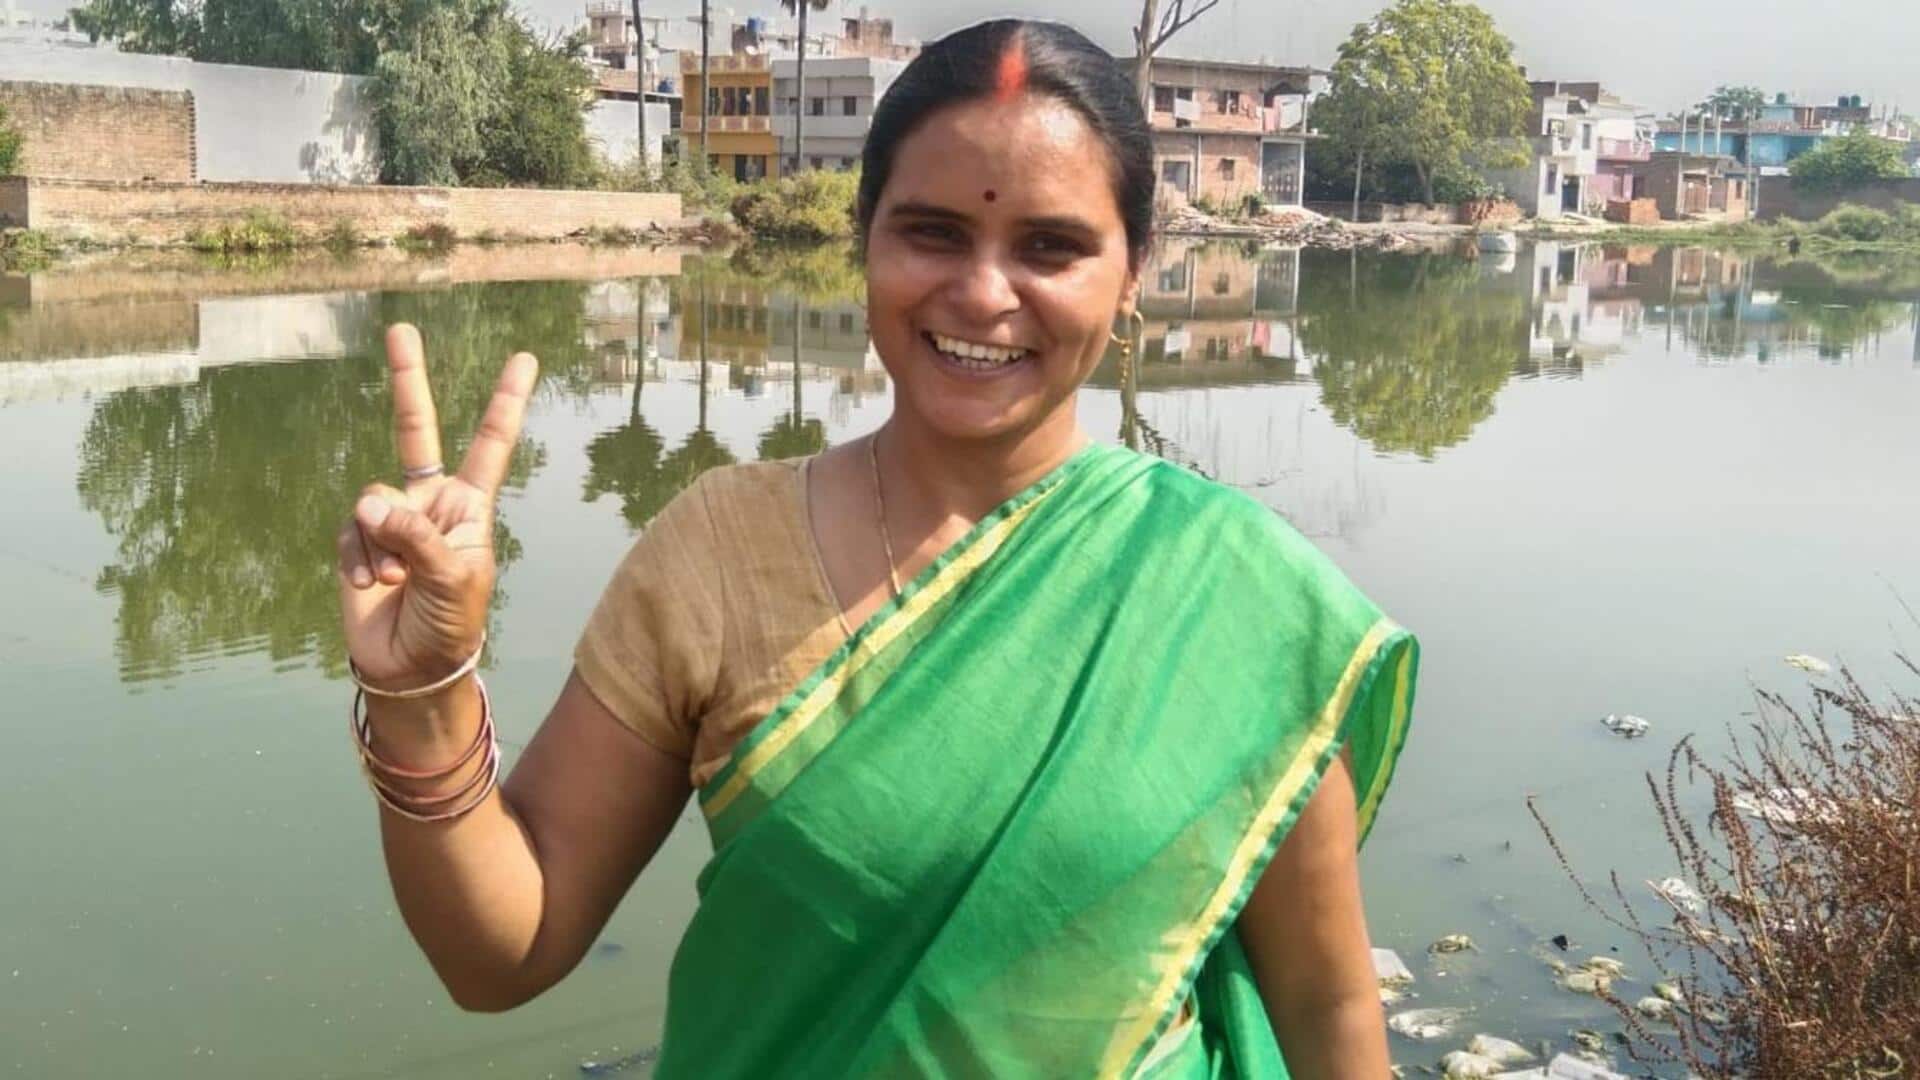 उत्तर प्रदेश: लखनऊ में निर्दलीय महिला उम्मीदवार का भाजपा पार्षद उम्मीदवार पर बंधक बनाने का आरोप